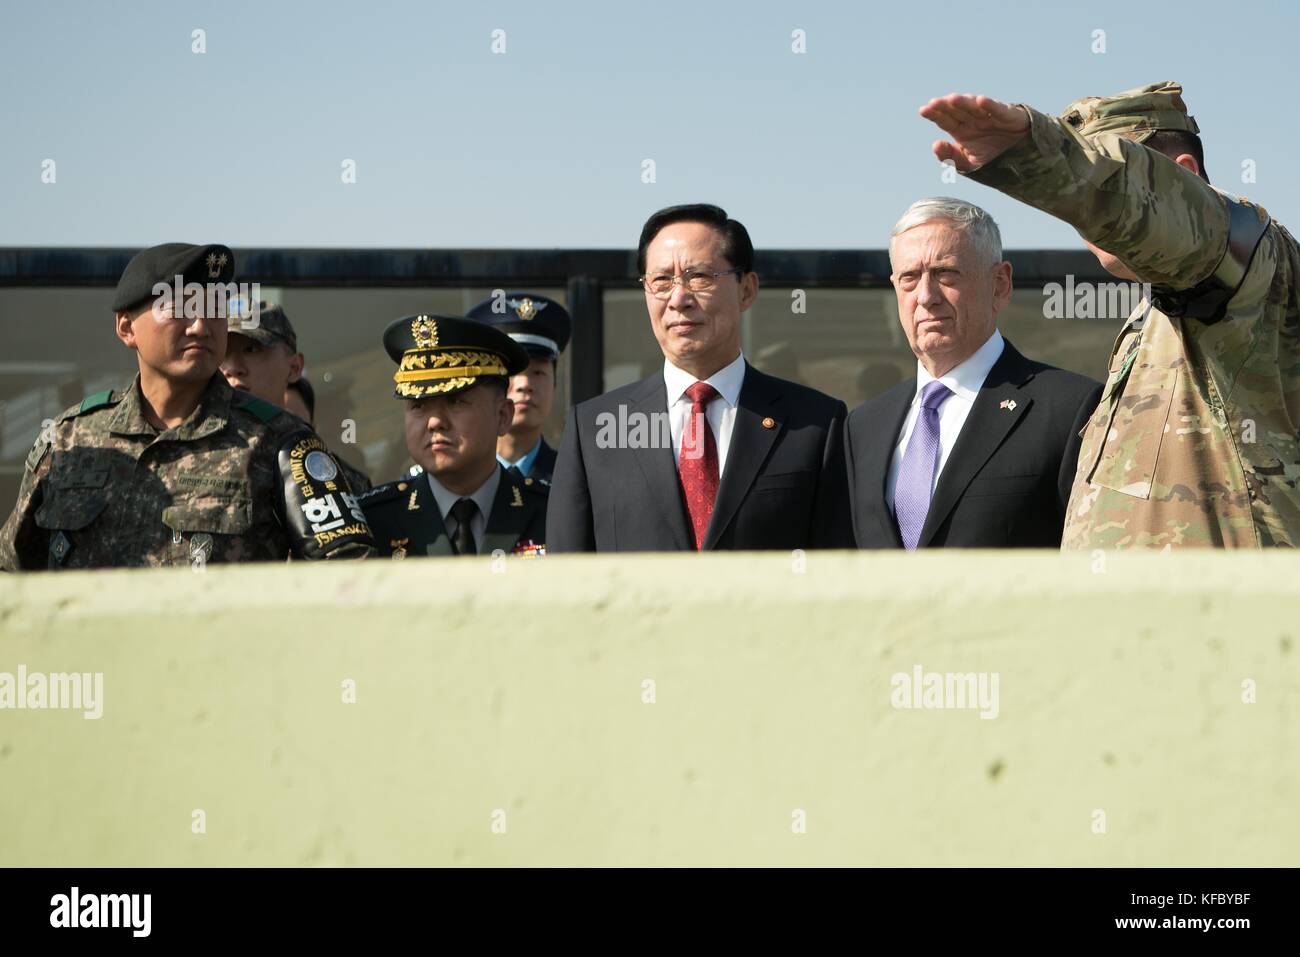 Le secrétaire américain à la défense, jim mattis et ministre de la défense sud-coréen song young-moo, centre, recevoir un exposé lors d'une visite surprise à la zone démilitarisée entre la Corée du Nord et du sud, le 27 octobre 2017 à Panmunjom, la Corée du Sud. Banque D'Images